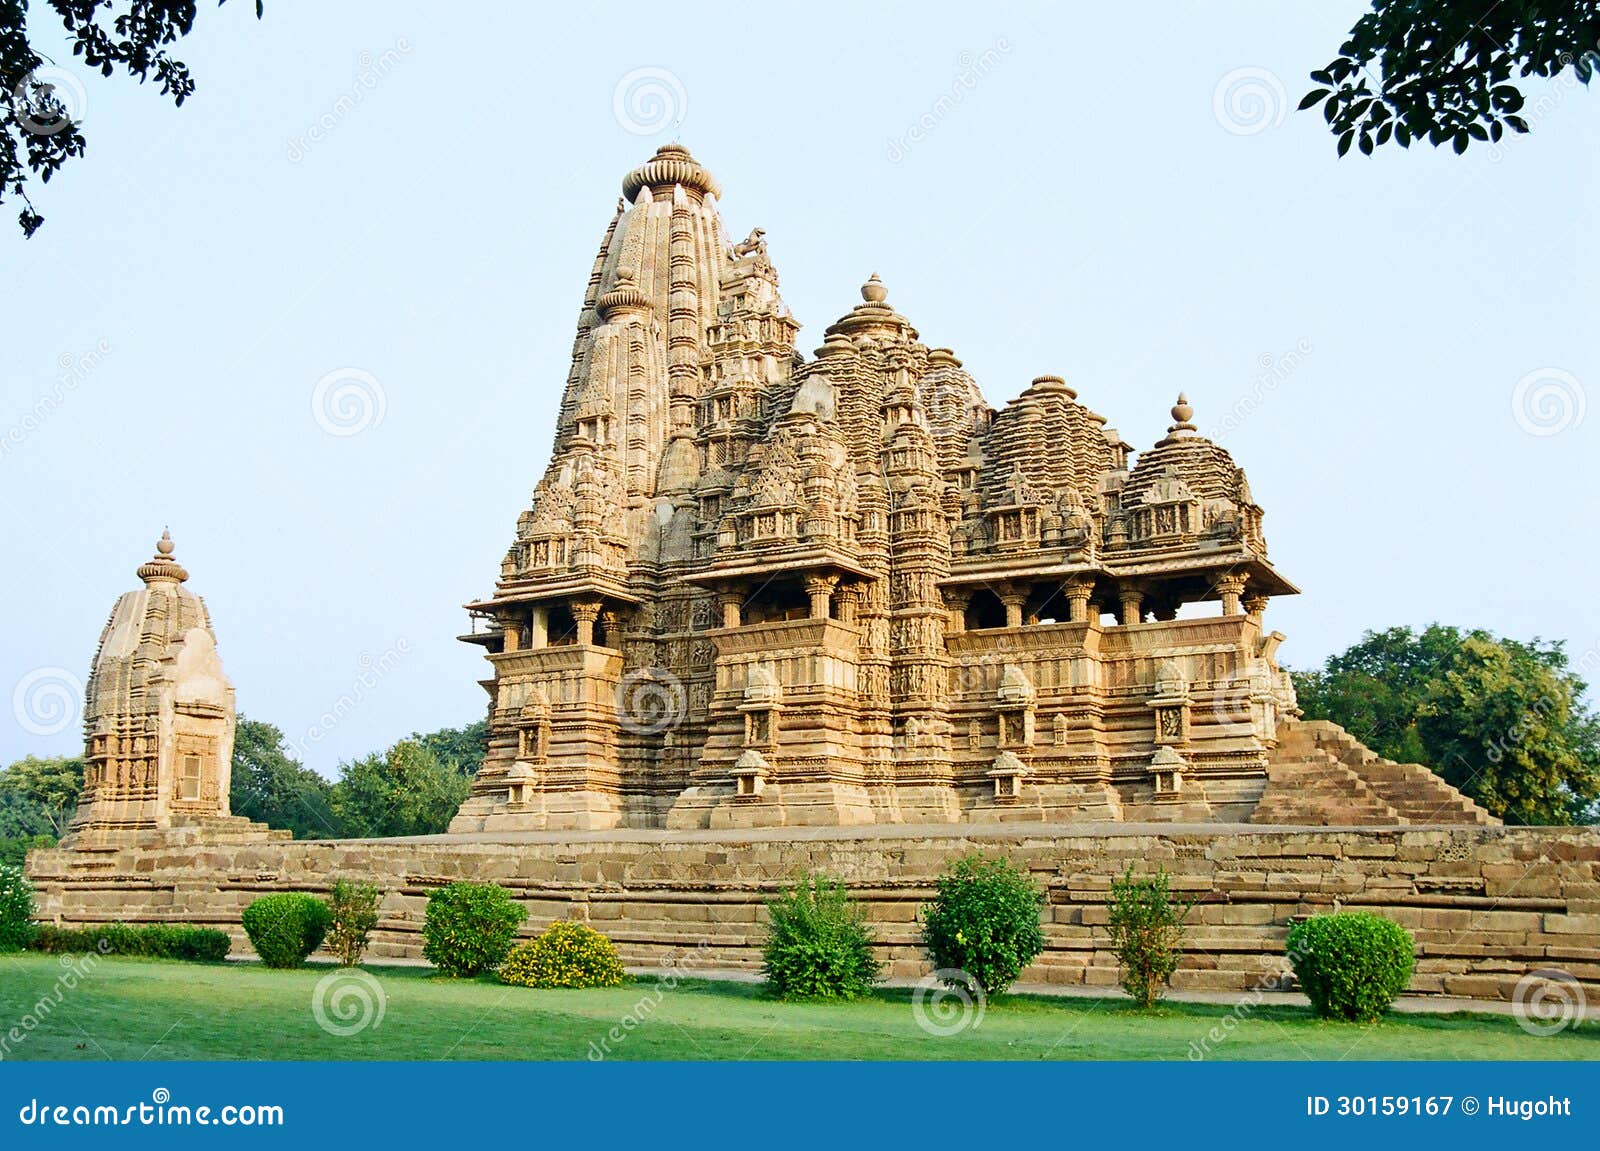 india erotic temples in khajuraho